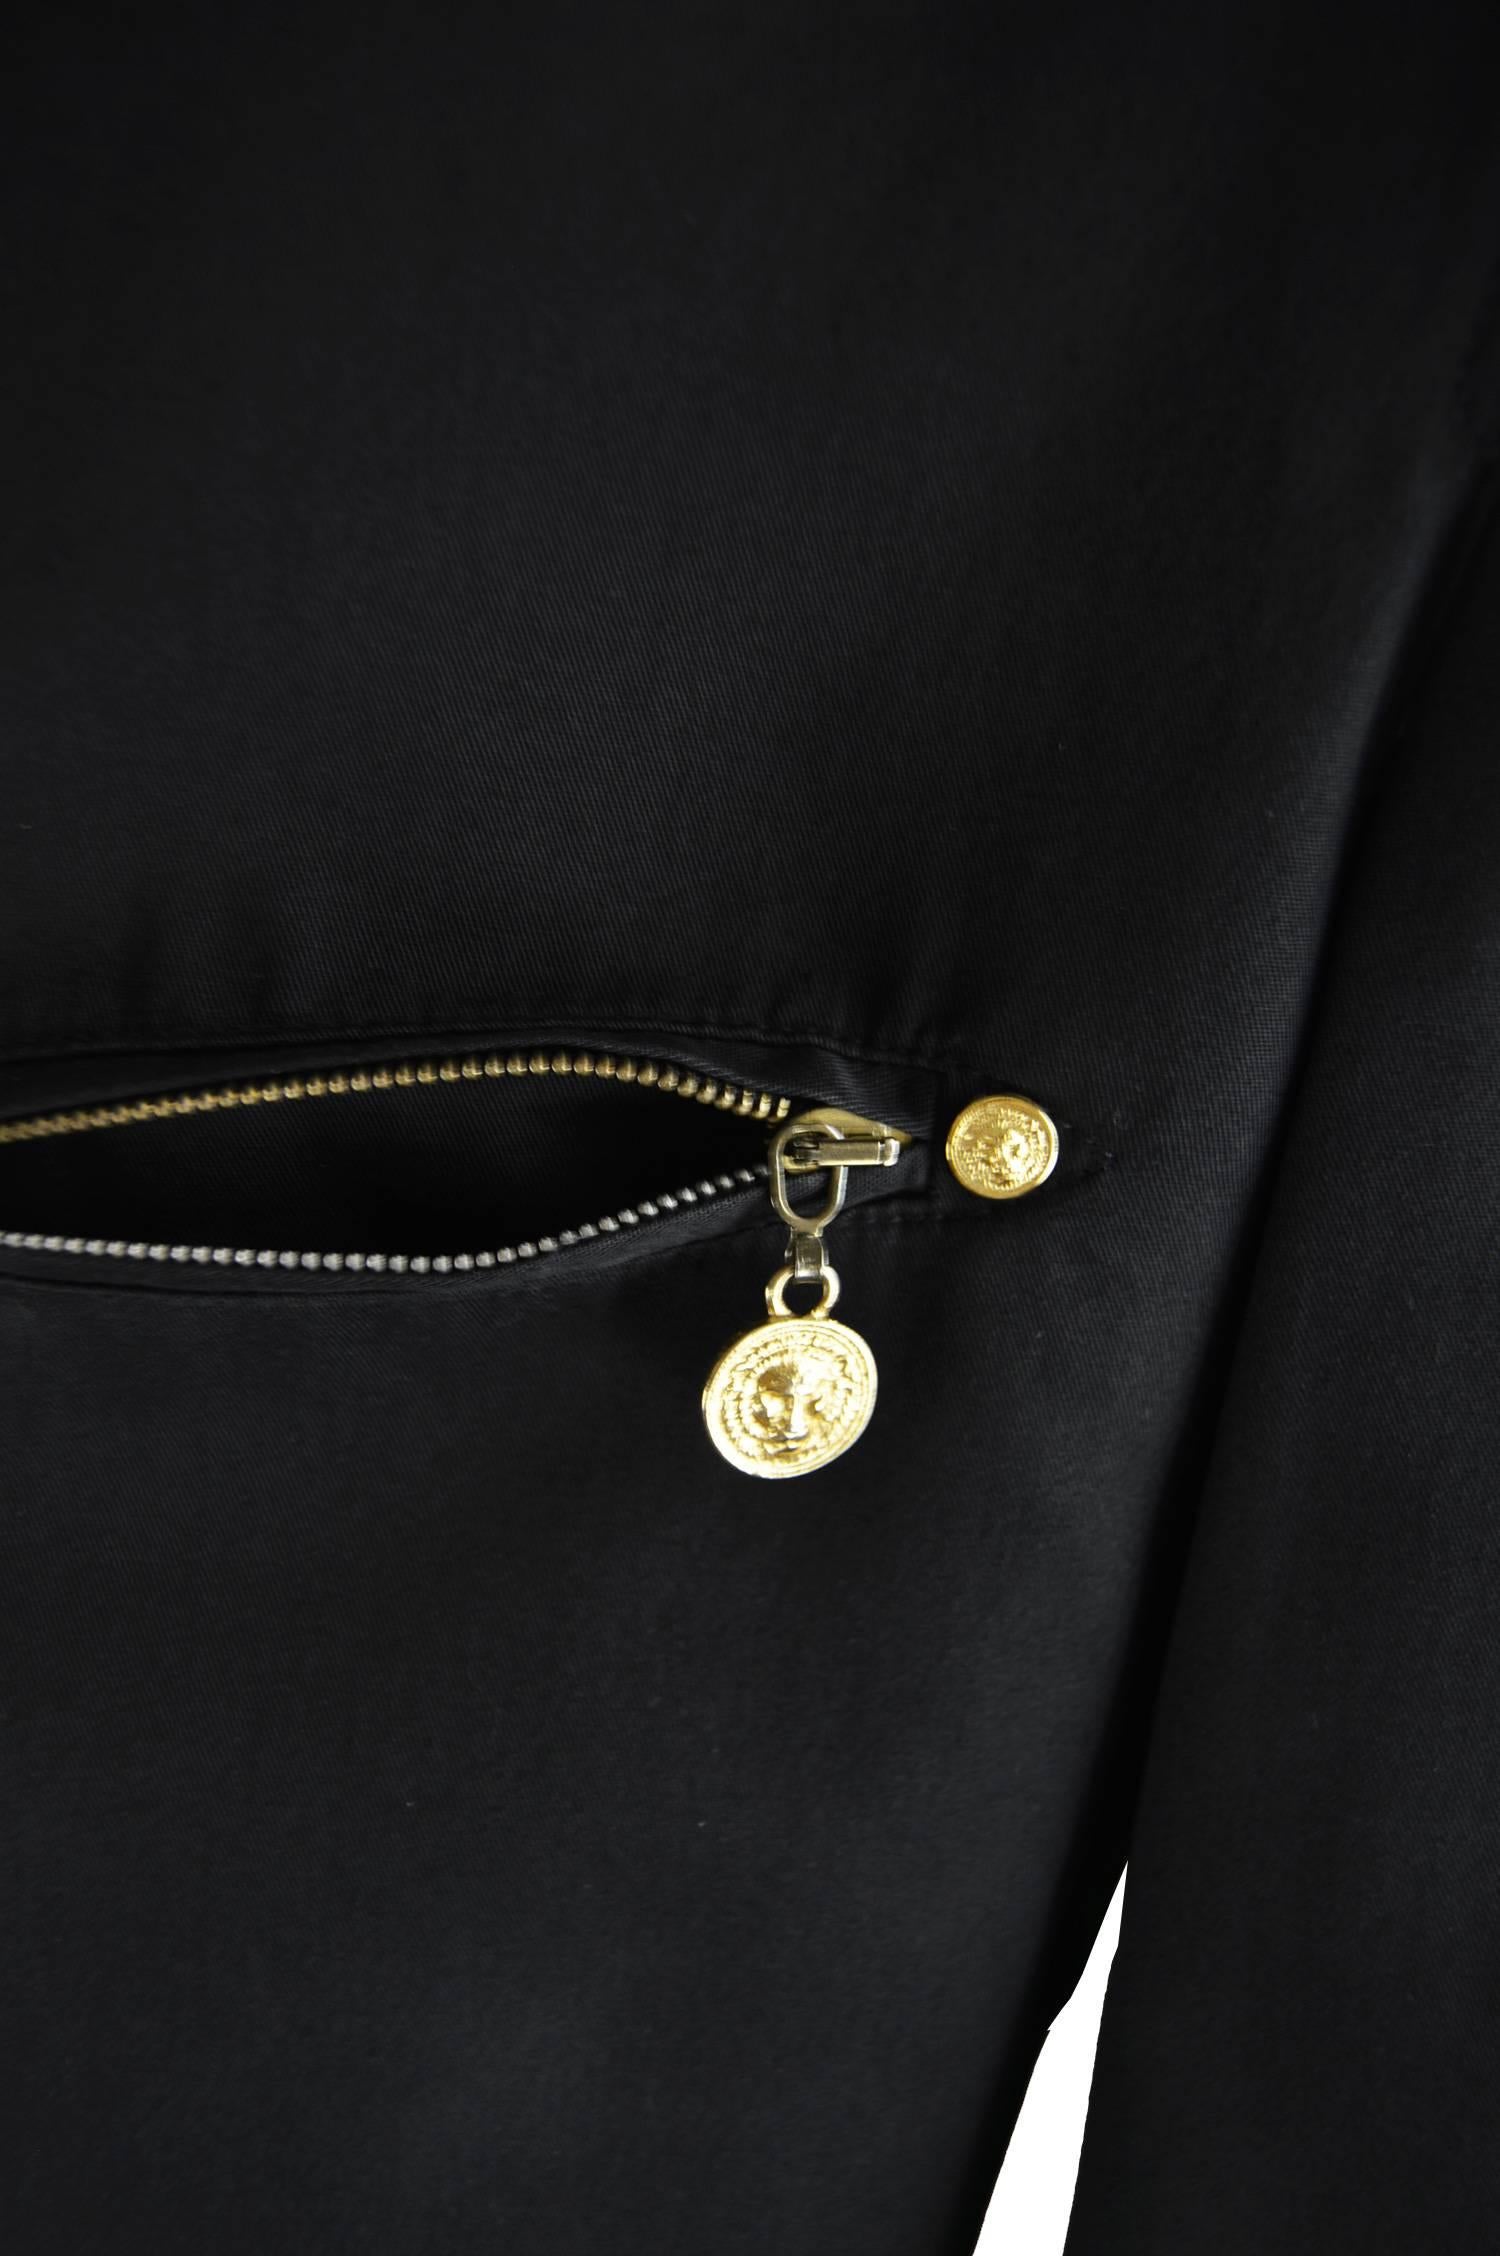 Gianni Versace Versus Vintage 1990's Men's Rare S & M Black & Gold Cotton Blazer For Sale 3